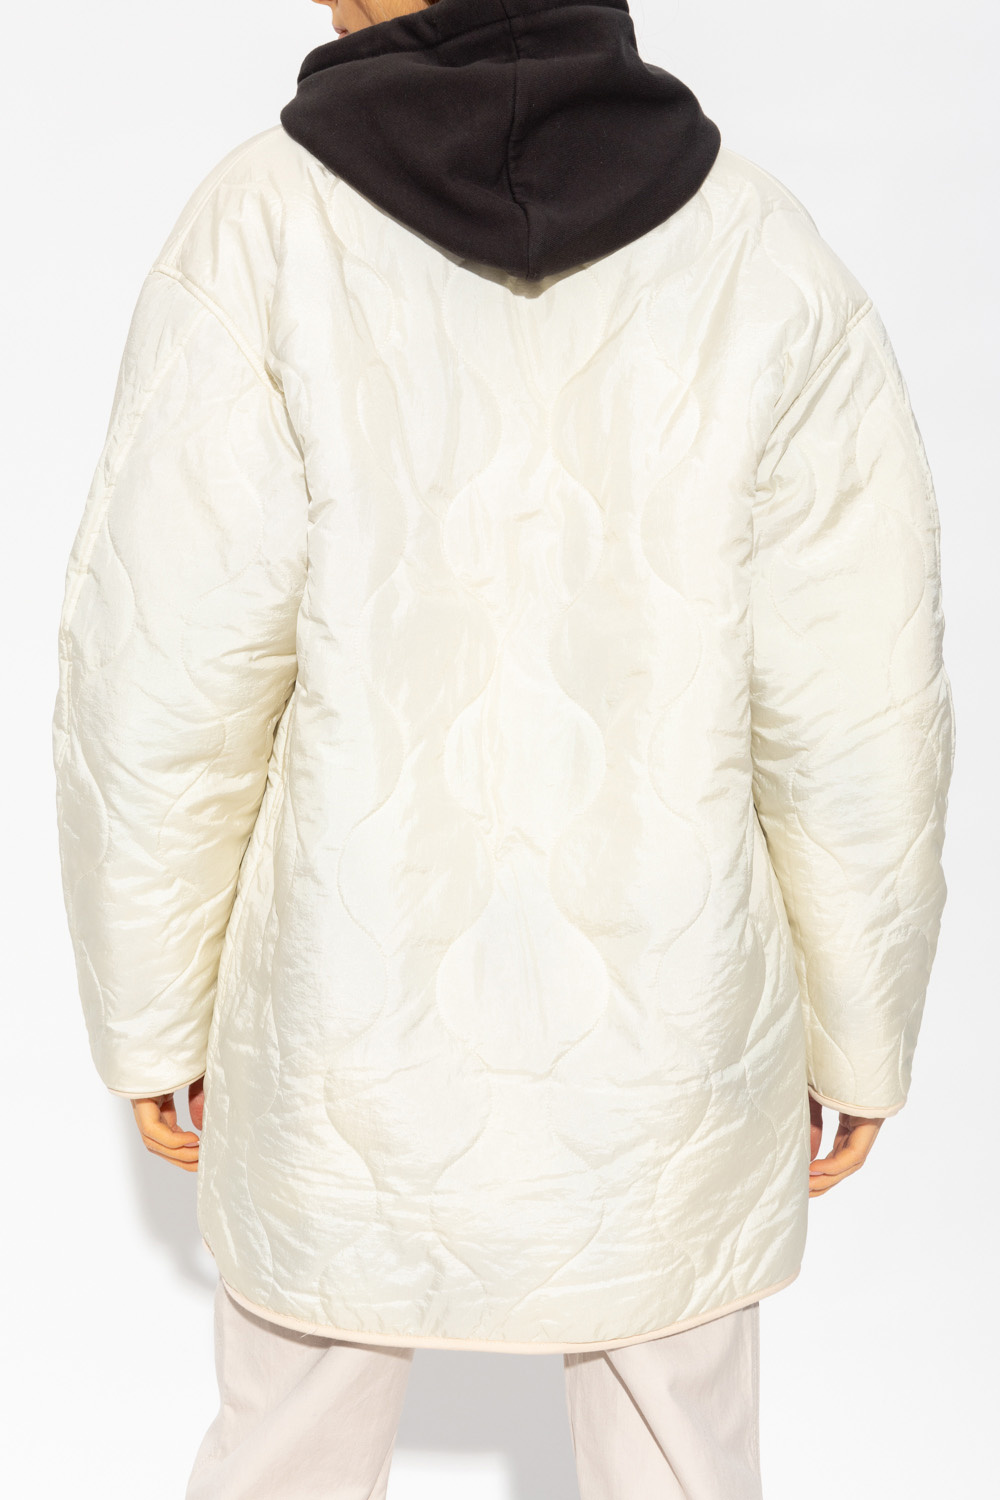 hemel intern Seizoen De-iceShops Canada - 'Himemma' reversible jacket Isabel Marant Étoile -  Mens Superdry Tokyo Jacket